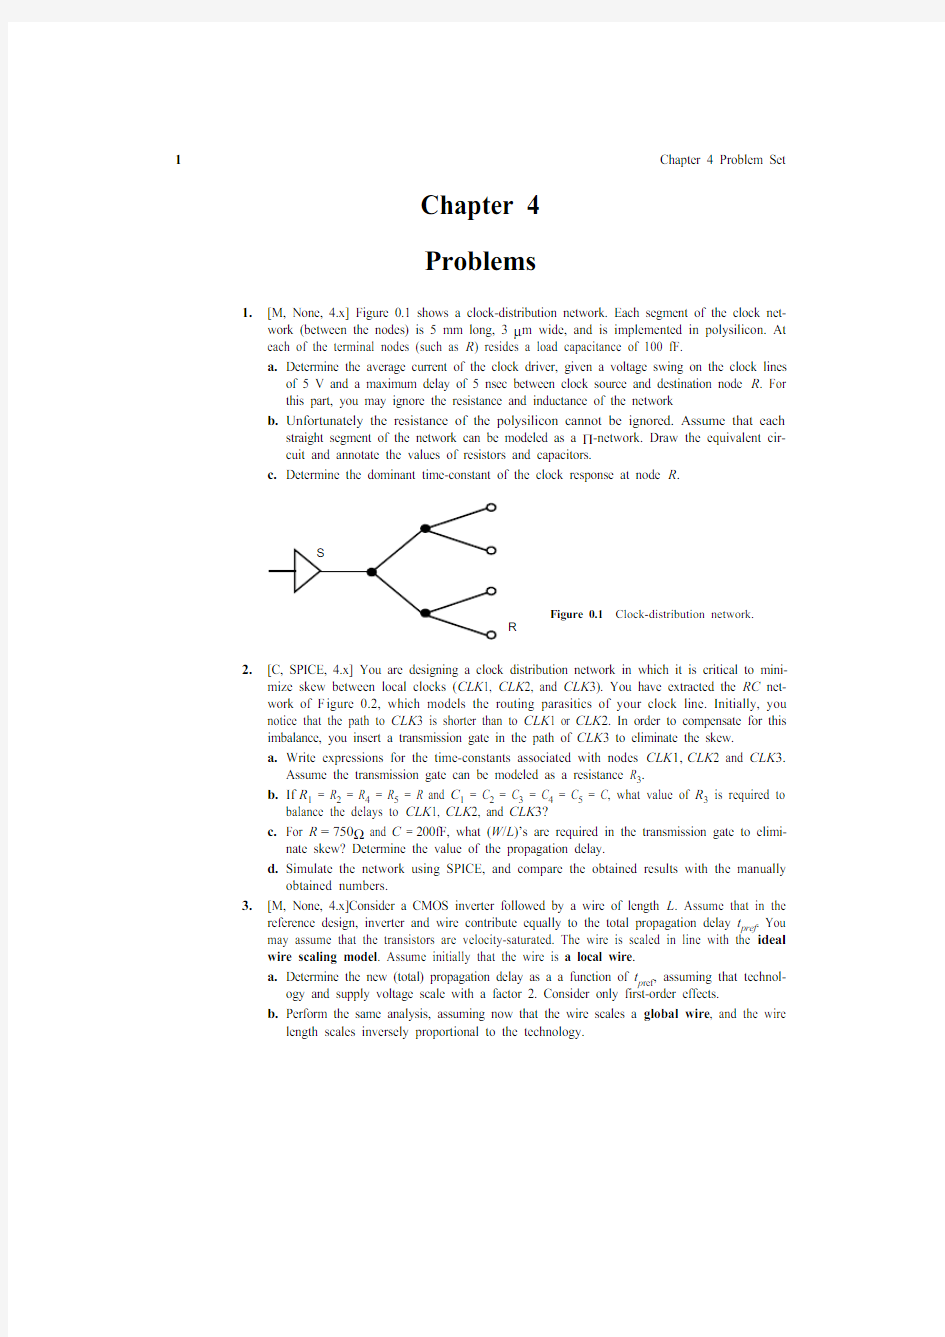 数字集成电路--电路、系统与设计(第二版)课后练习题-第四章 导线-Chapter 4 The Wire